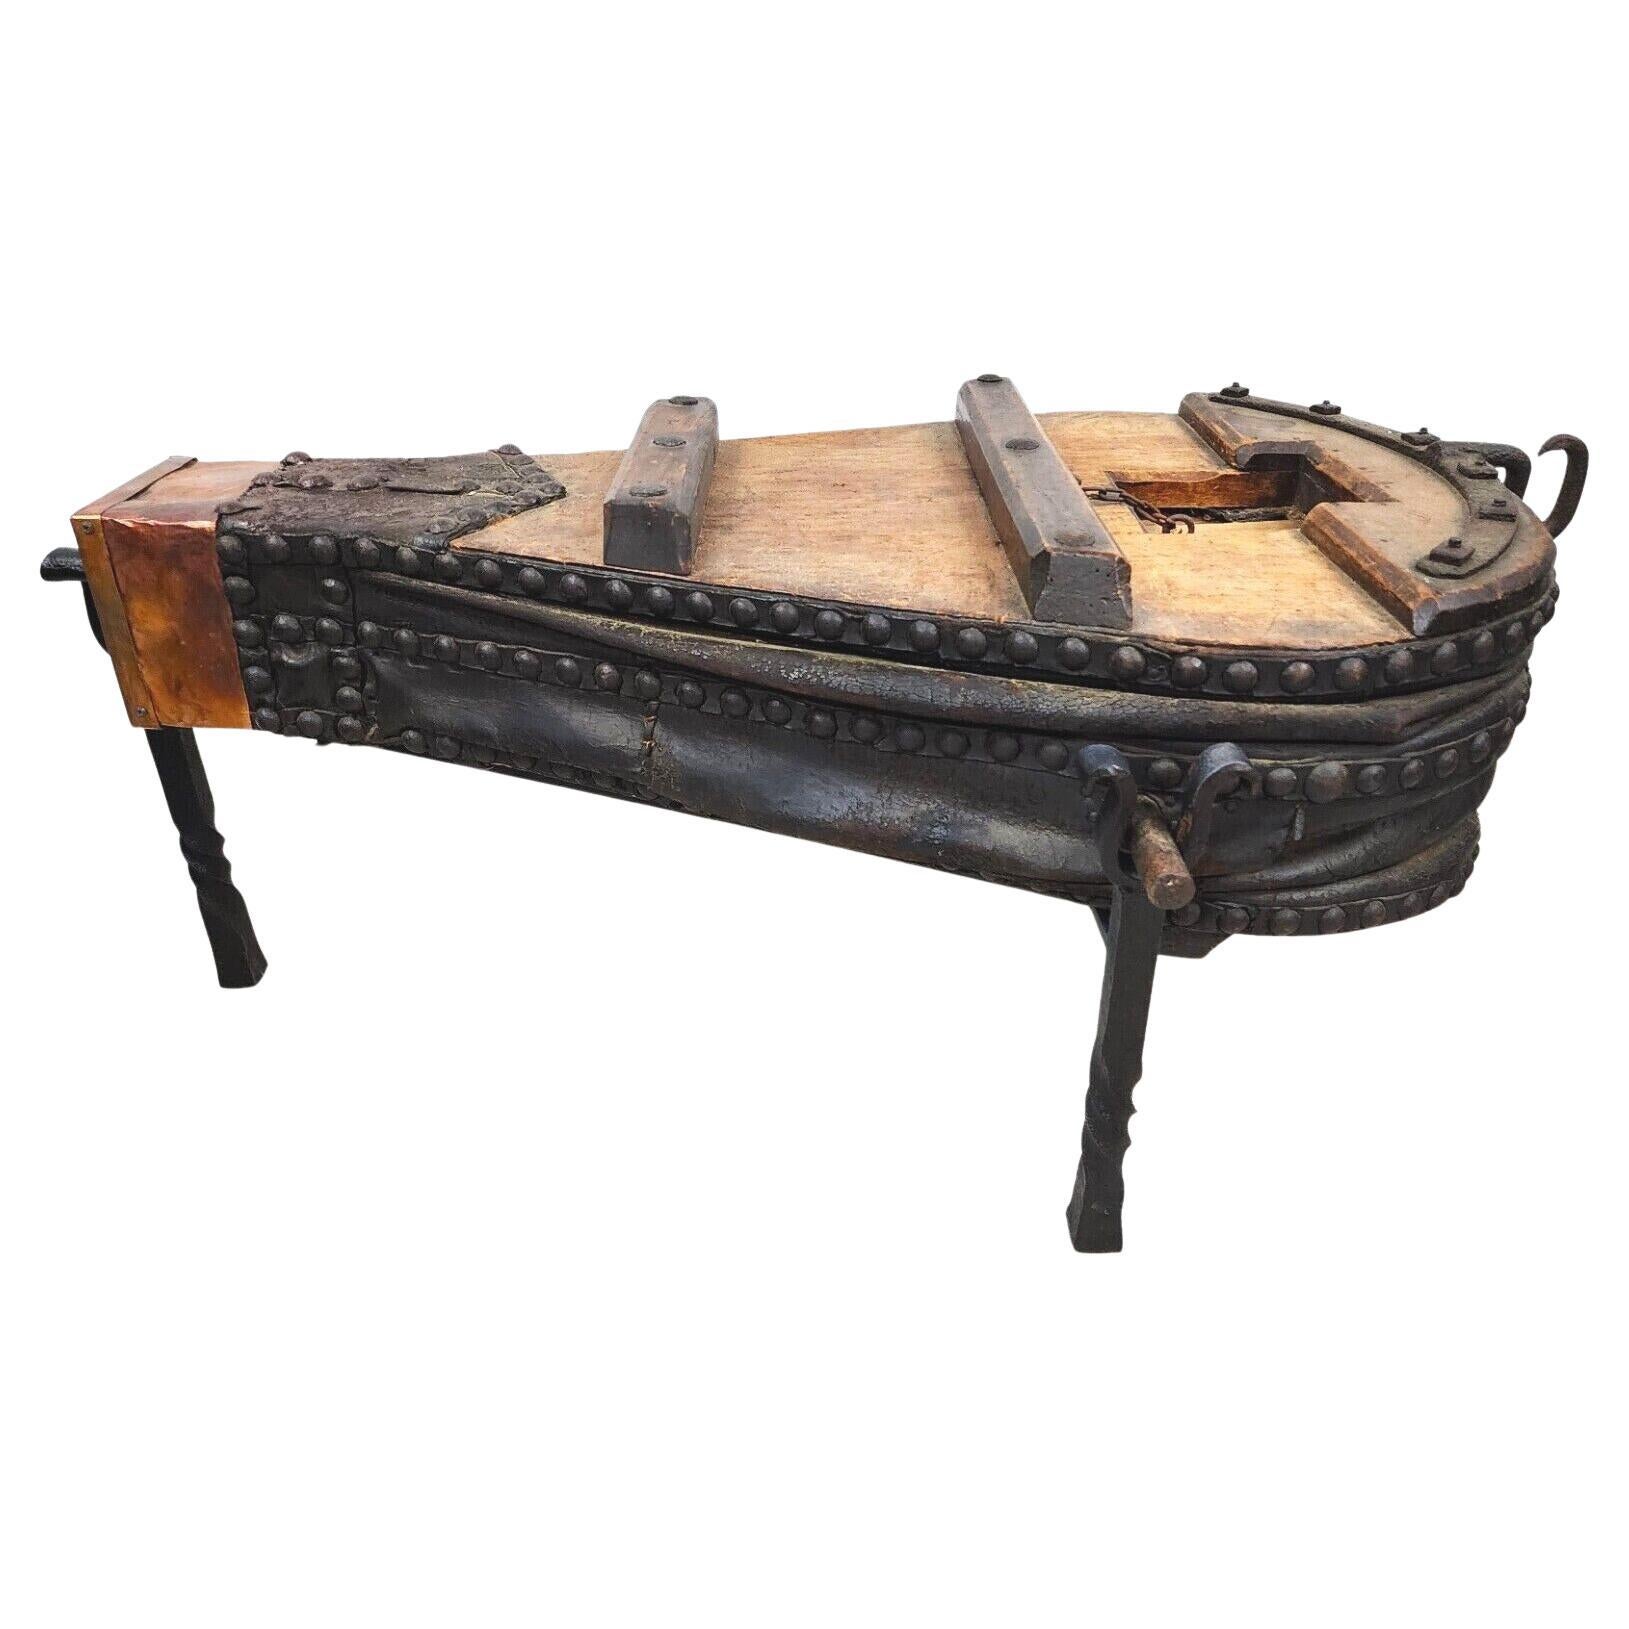 Table basse rustique à soufflet de forgeron français des années 1800